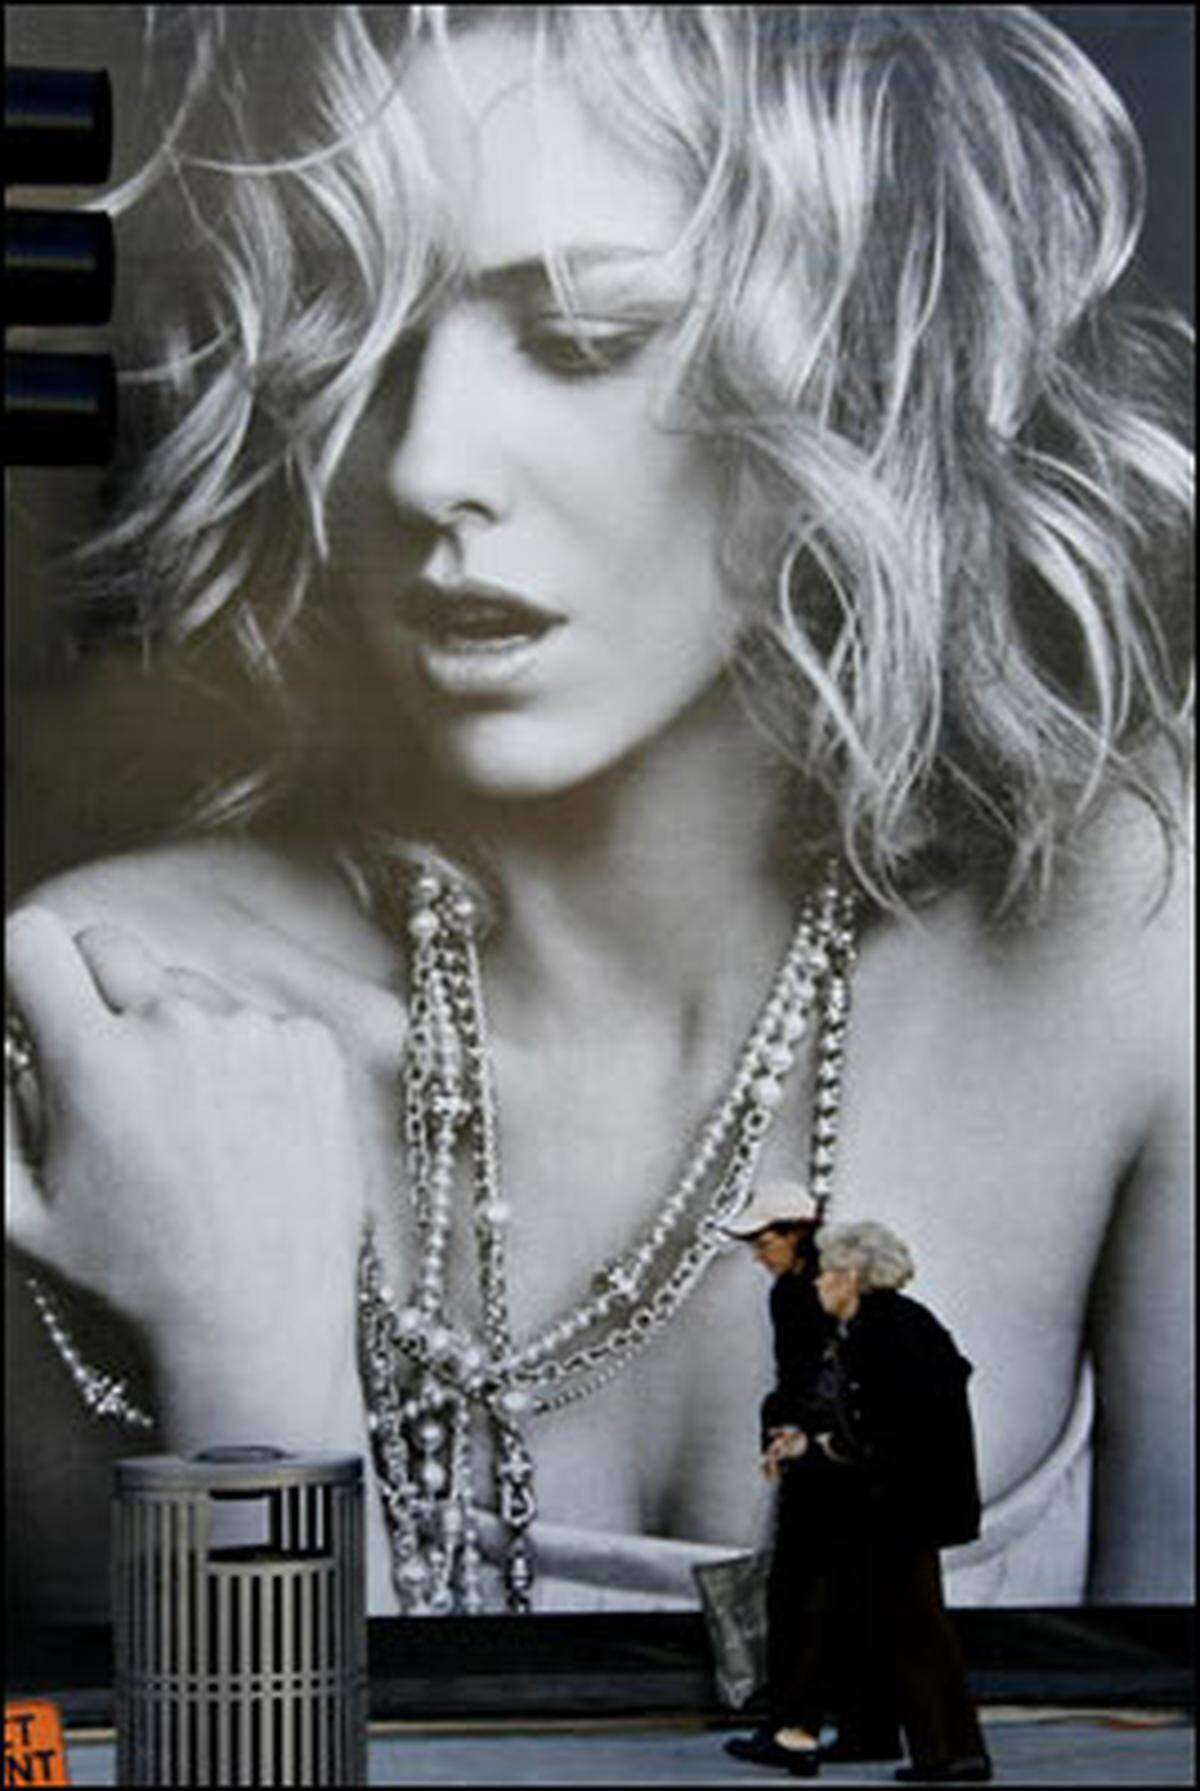 Edel-Juwelier David Yurman ist bekannt für seine überdimensionalen Werbetafeln. Die Protagonistinnen: Stars. Und zwar nackt. Nun ist Naomi Watts an der Reihe, Autofahrer rund um den Rodeo Drive den Kopf zu verdrehen.